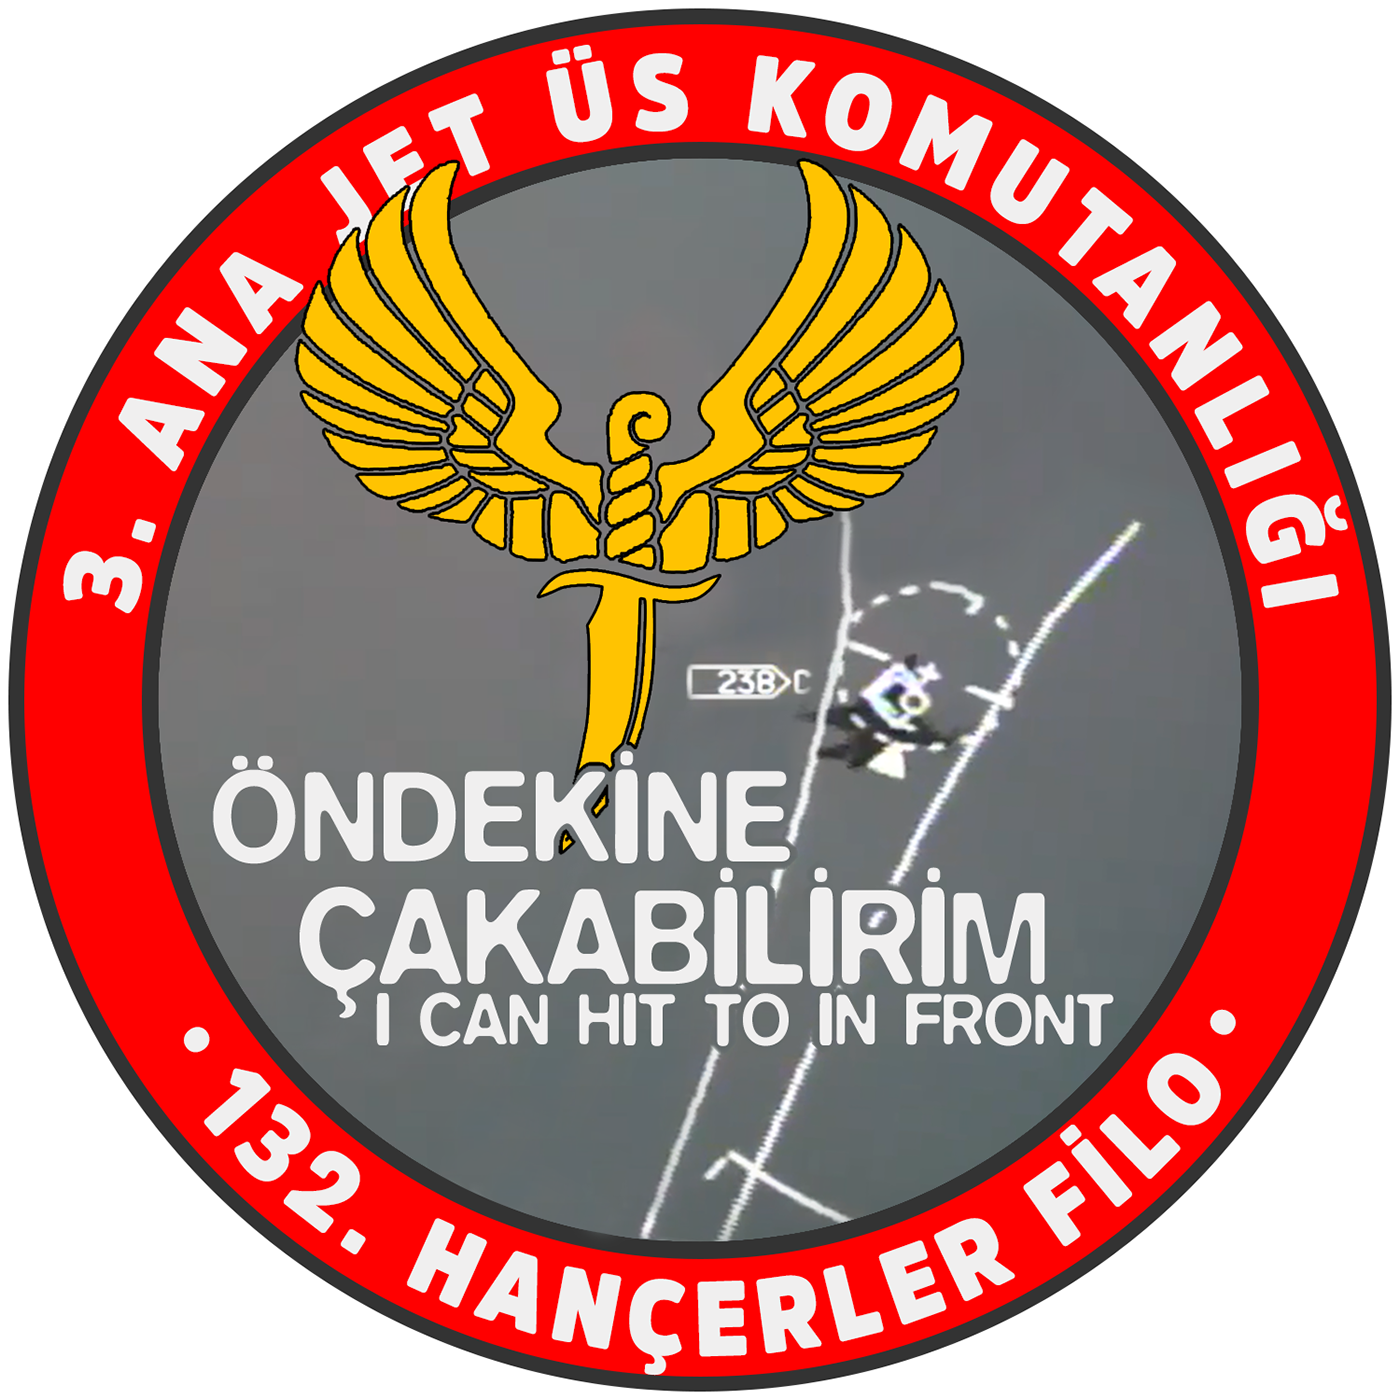 abdulsametkaya askeri f16 Kuvvetleri miltary öndekineçakabilirim pec silahlı turk turkish